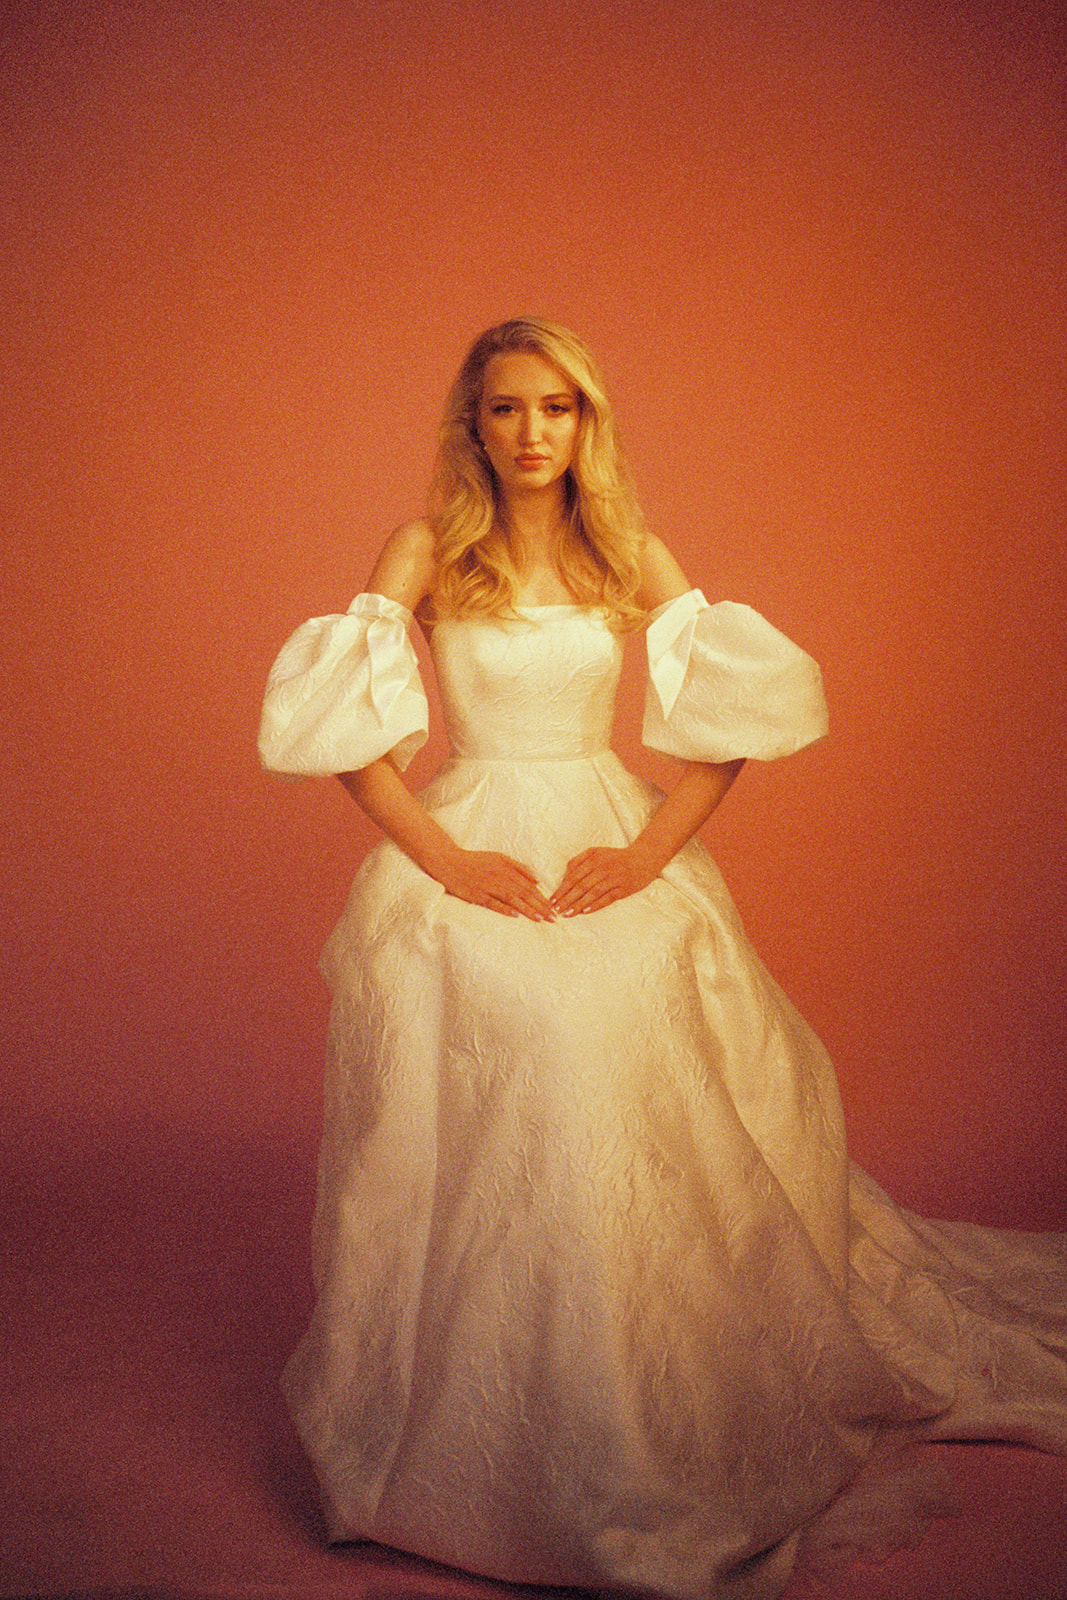 uk fashion bridal film photographer scotland 35mm